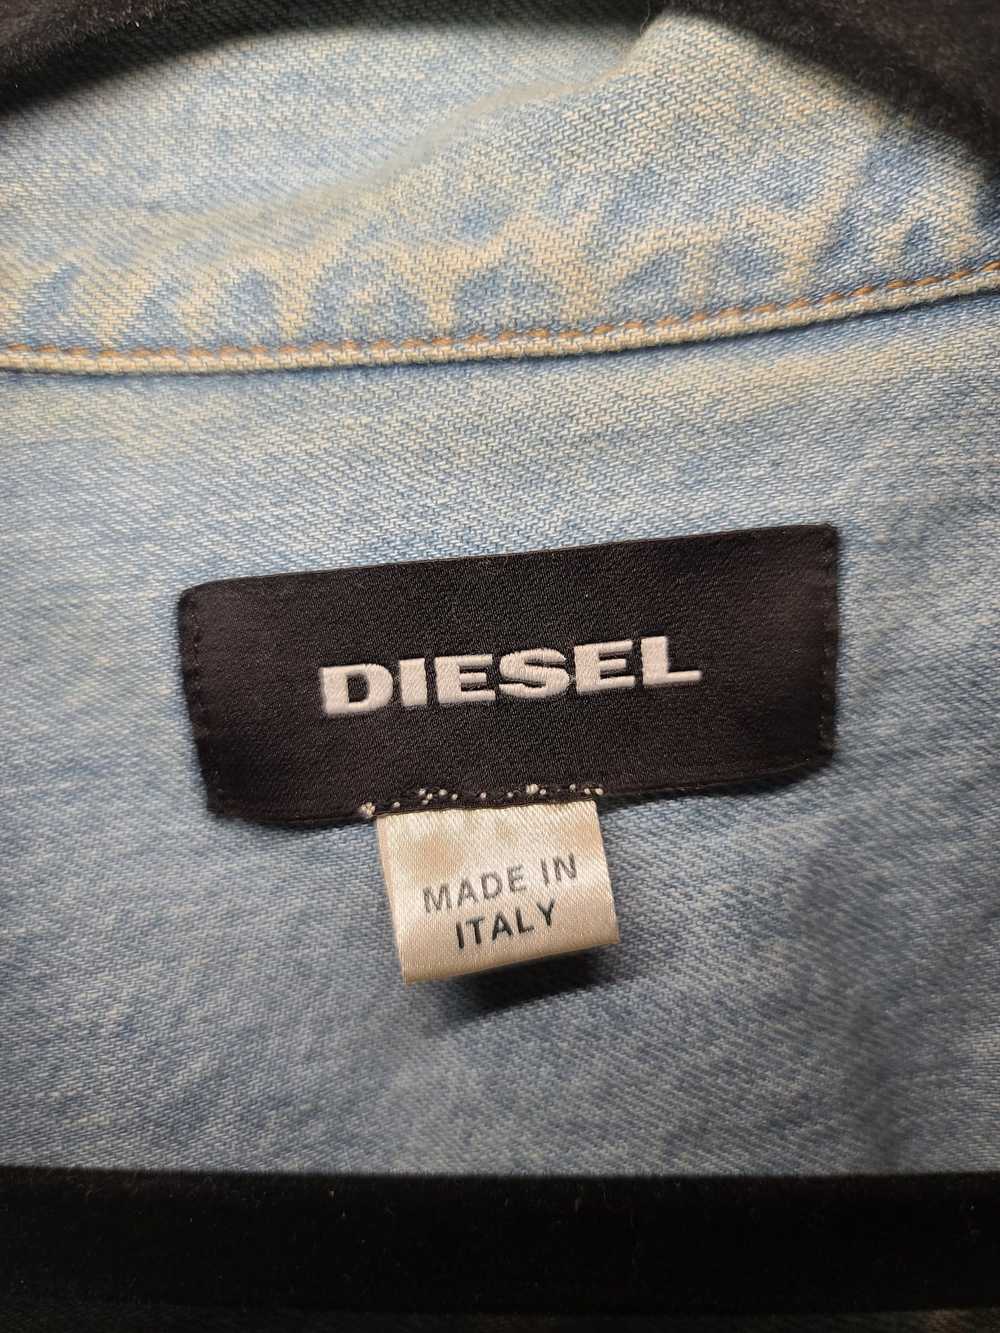 Diesel Diesel D-KIM Denim Jacket - image 3